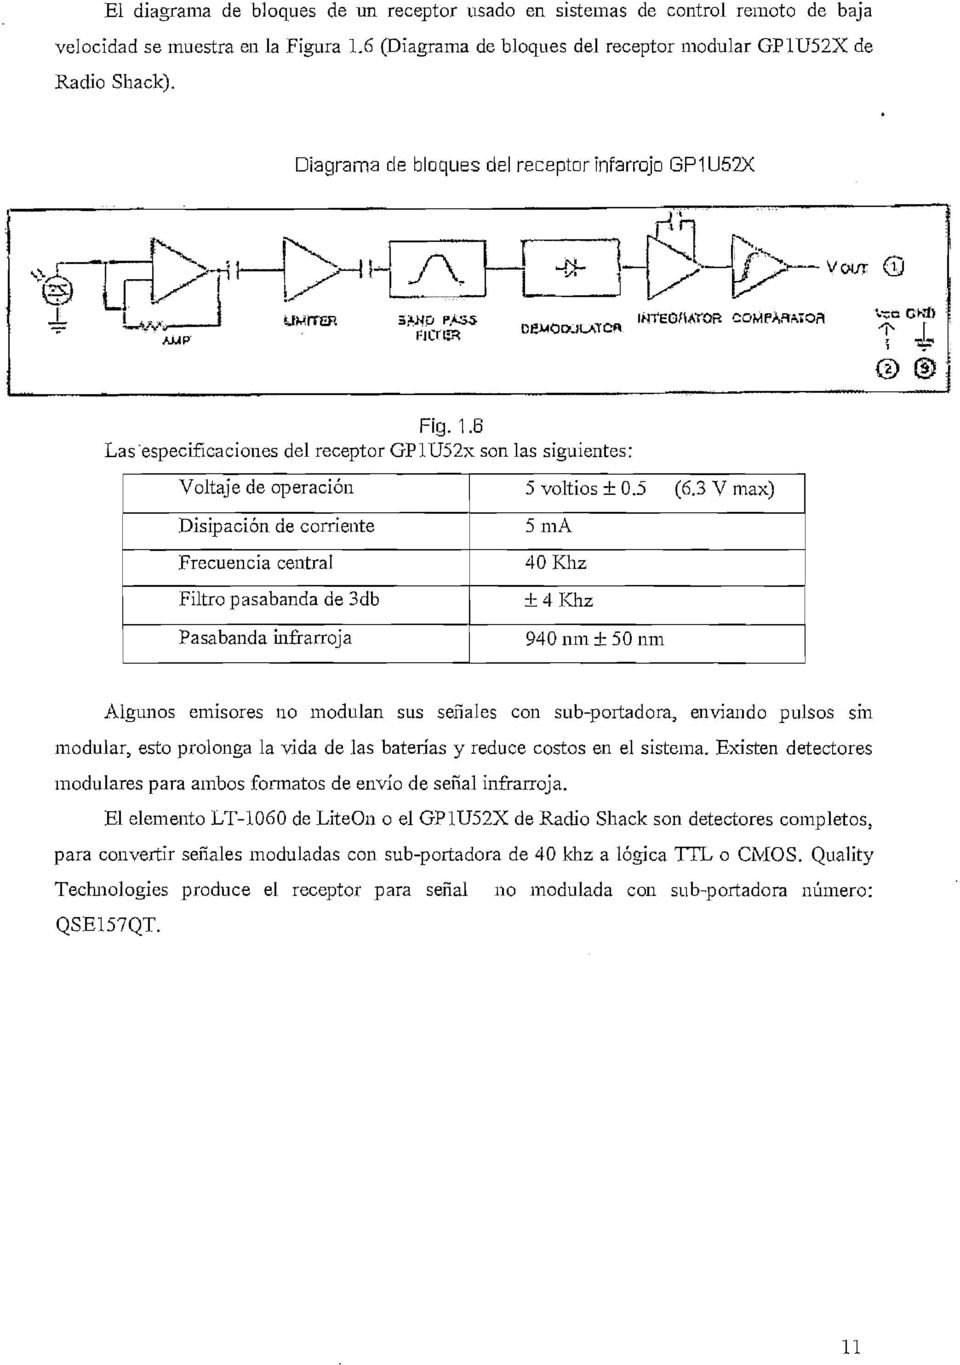 6 Las "especificaciones del receptor GPlU52x son las siguientes: Voltaje de operación Disipación de corriente Frecuencia central Filtro pasabanda de 3db Pasabanda infrarroja 5 voltios ± 0.5 (6.